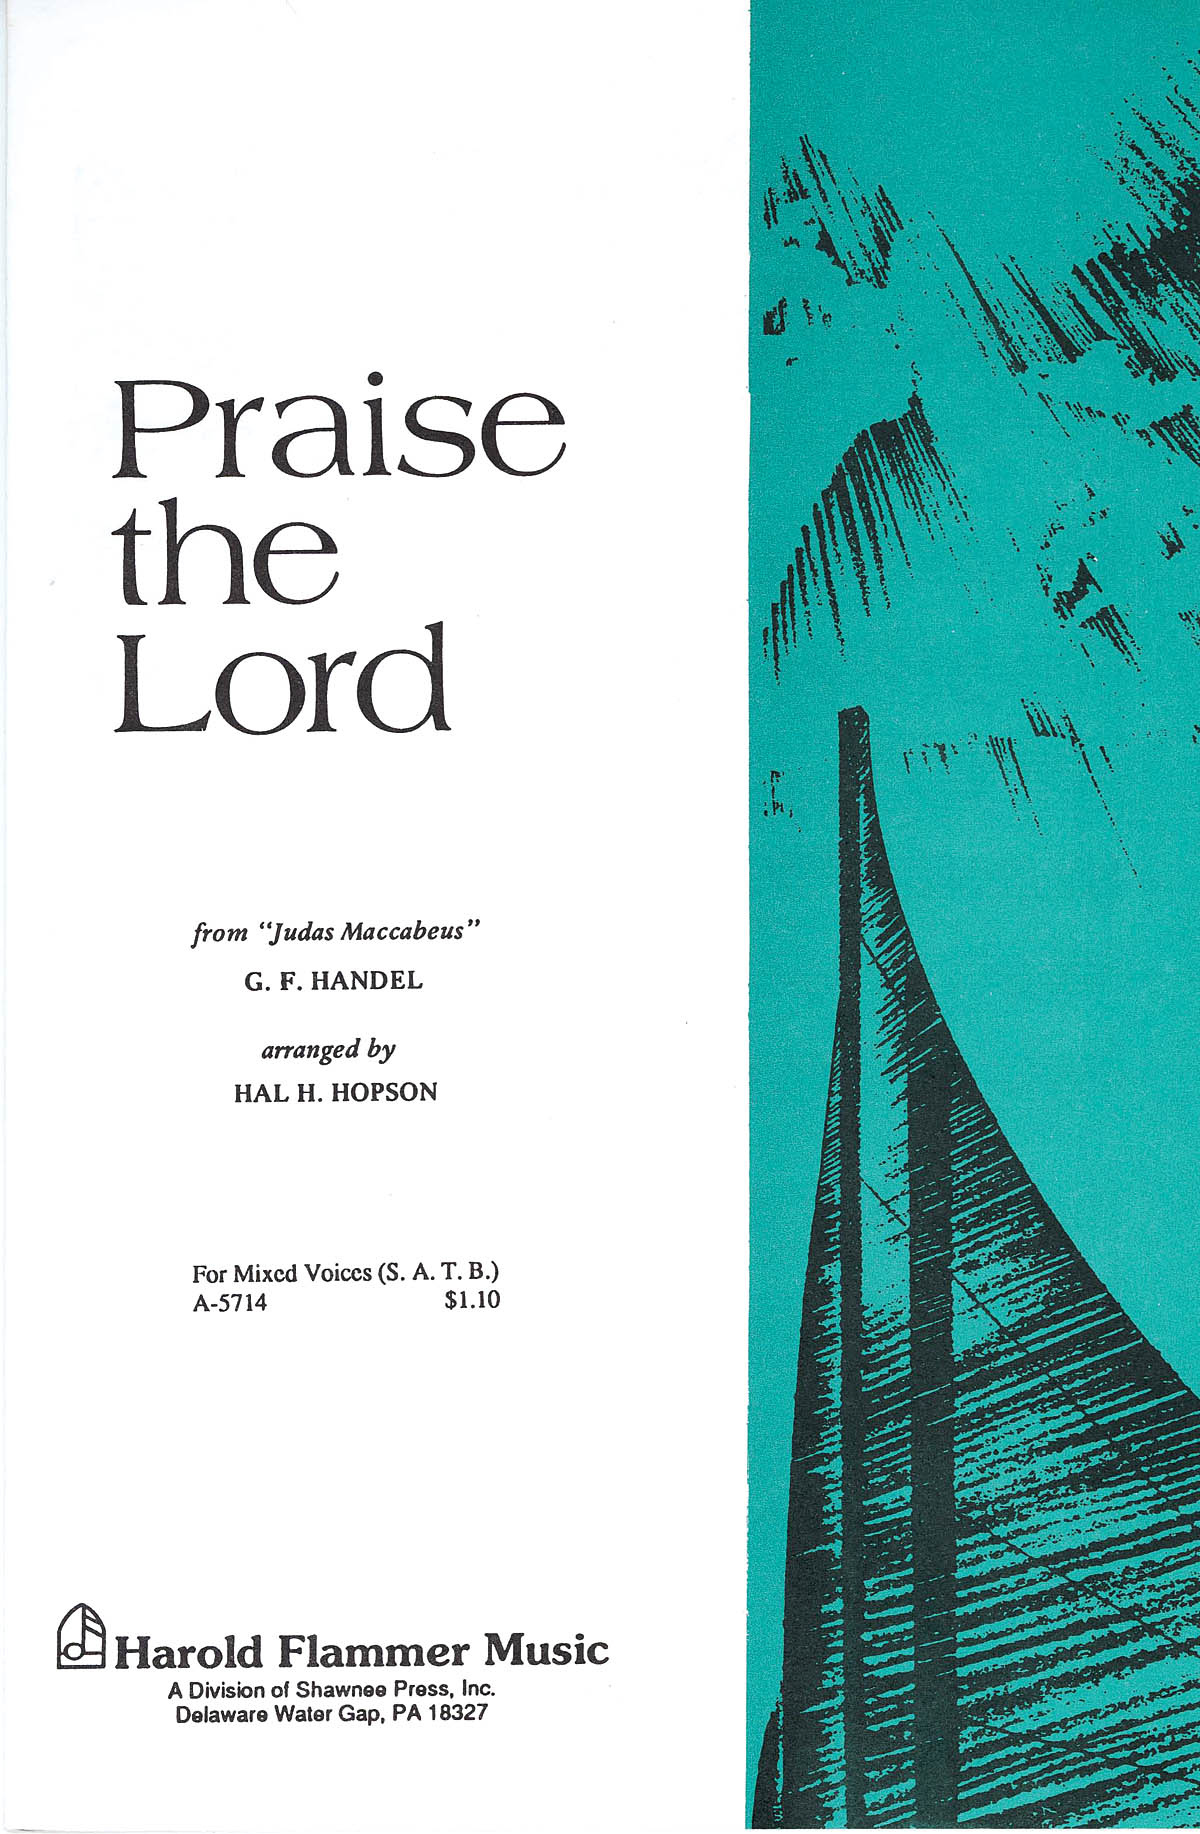 Georg Friedrich Händel: Praise the Lord (from Judas Maccabeus): SATB: Vocal